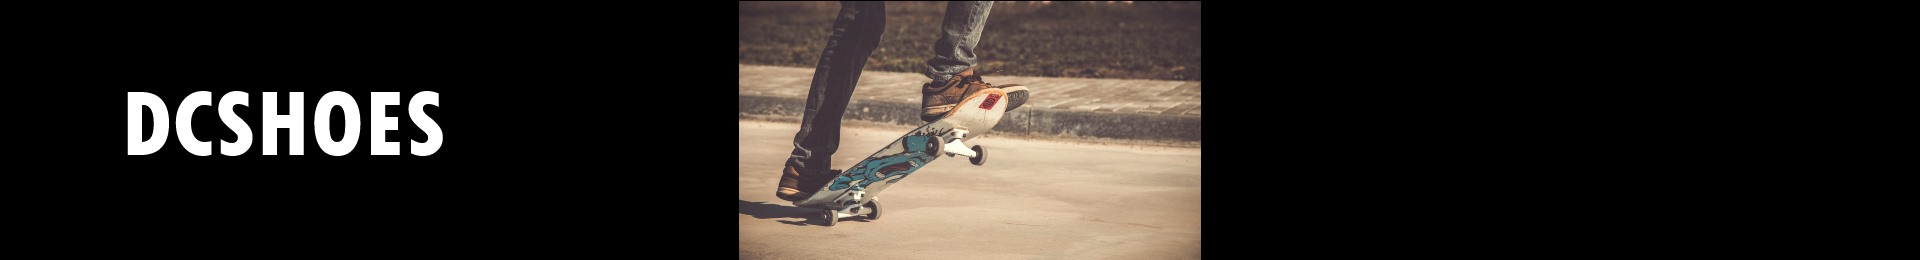 casquette skatboard